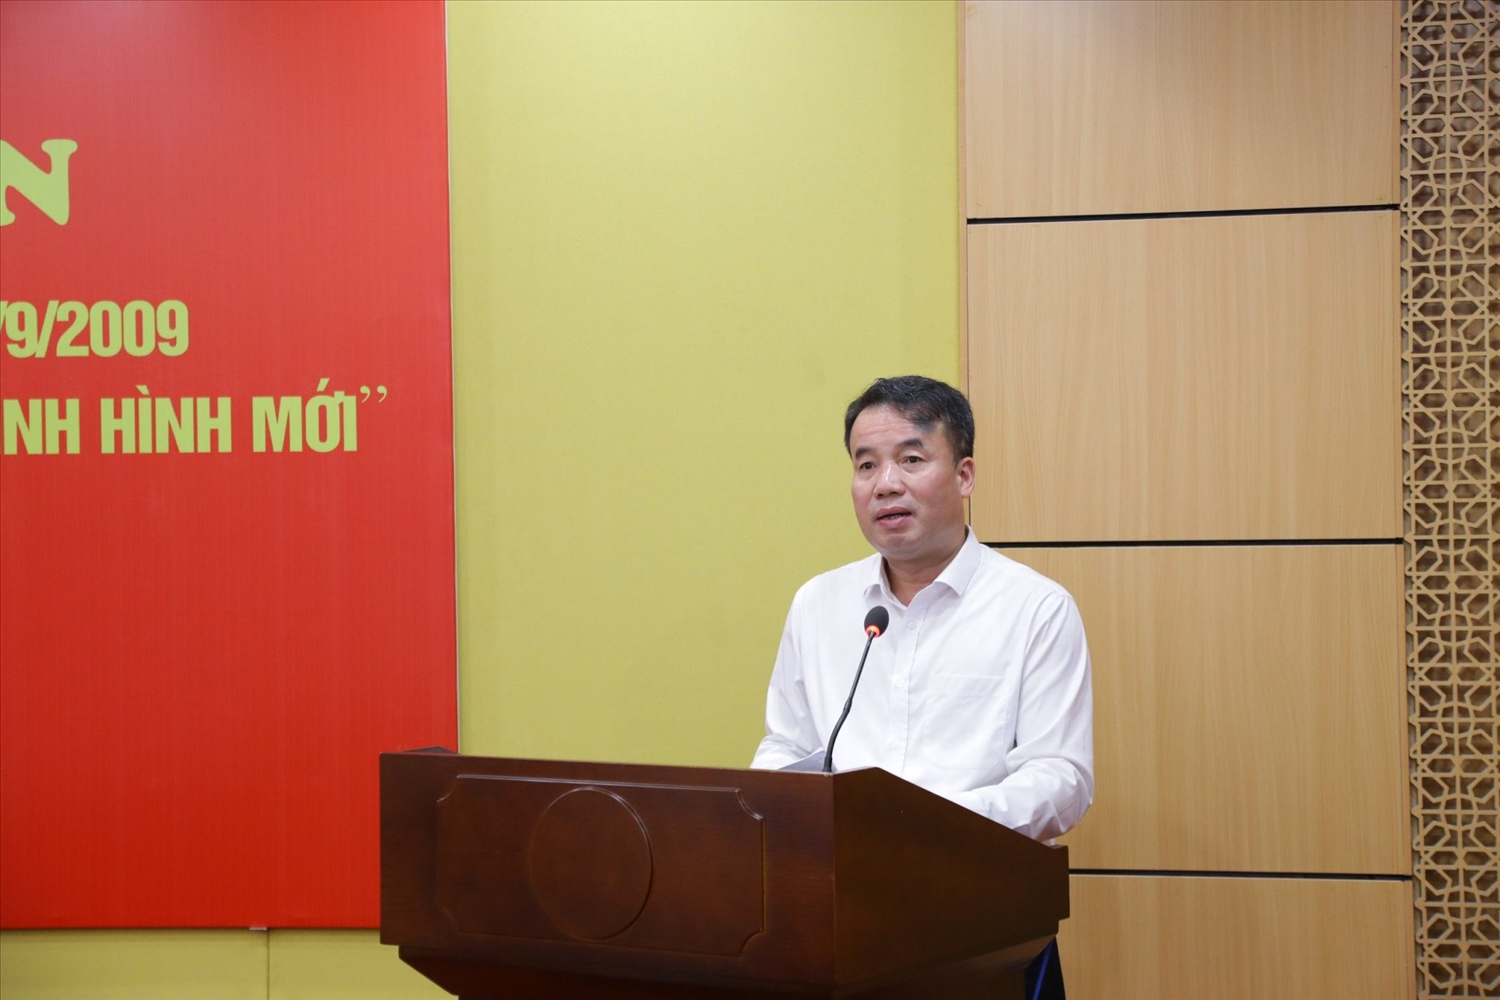  Tổng Giám đốc BHXH Việt Nam Nguyễn Thế Mạnh nhấn mạnh phát biểu tại Hội nghị